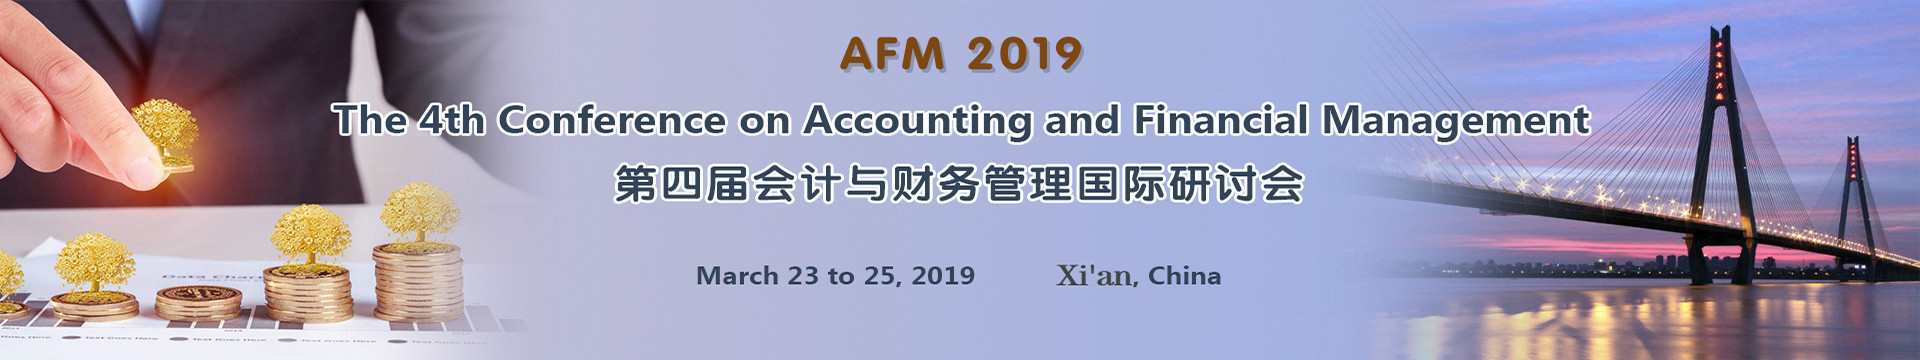 第四届会计与财务管理国际会议 (AFM 2019)